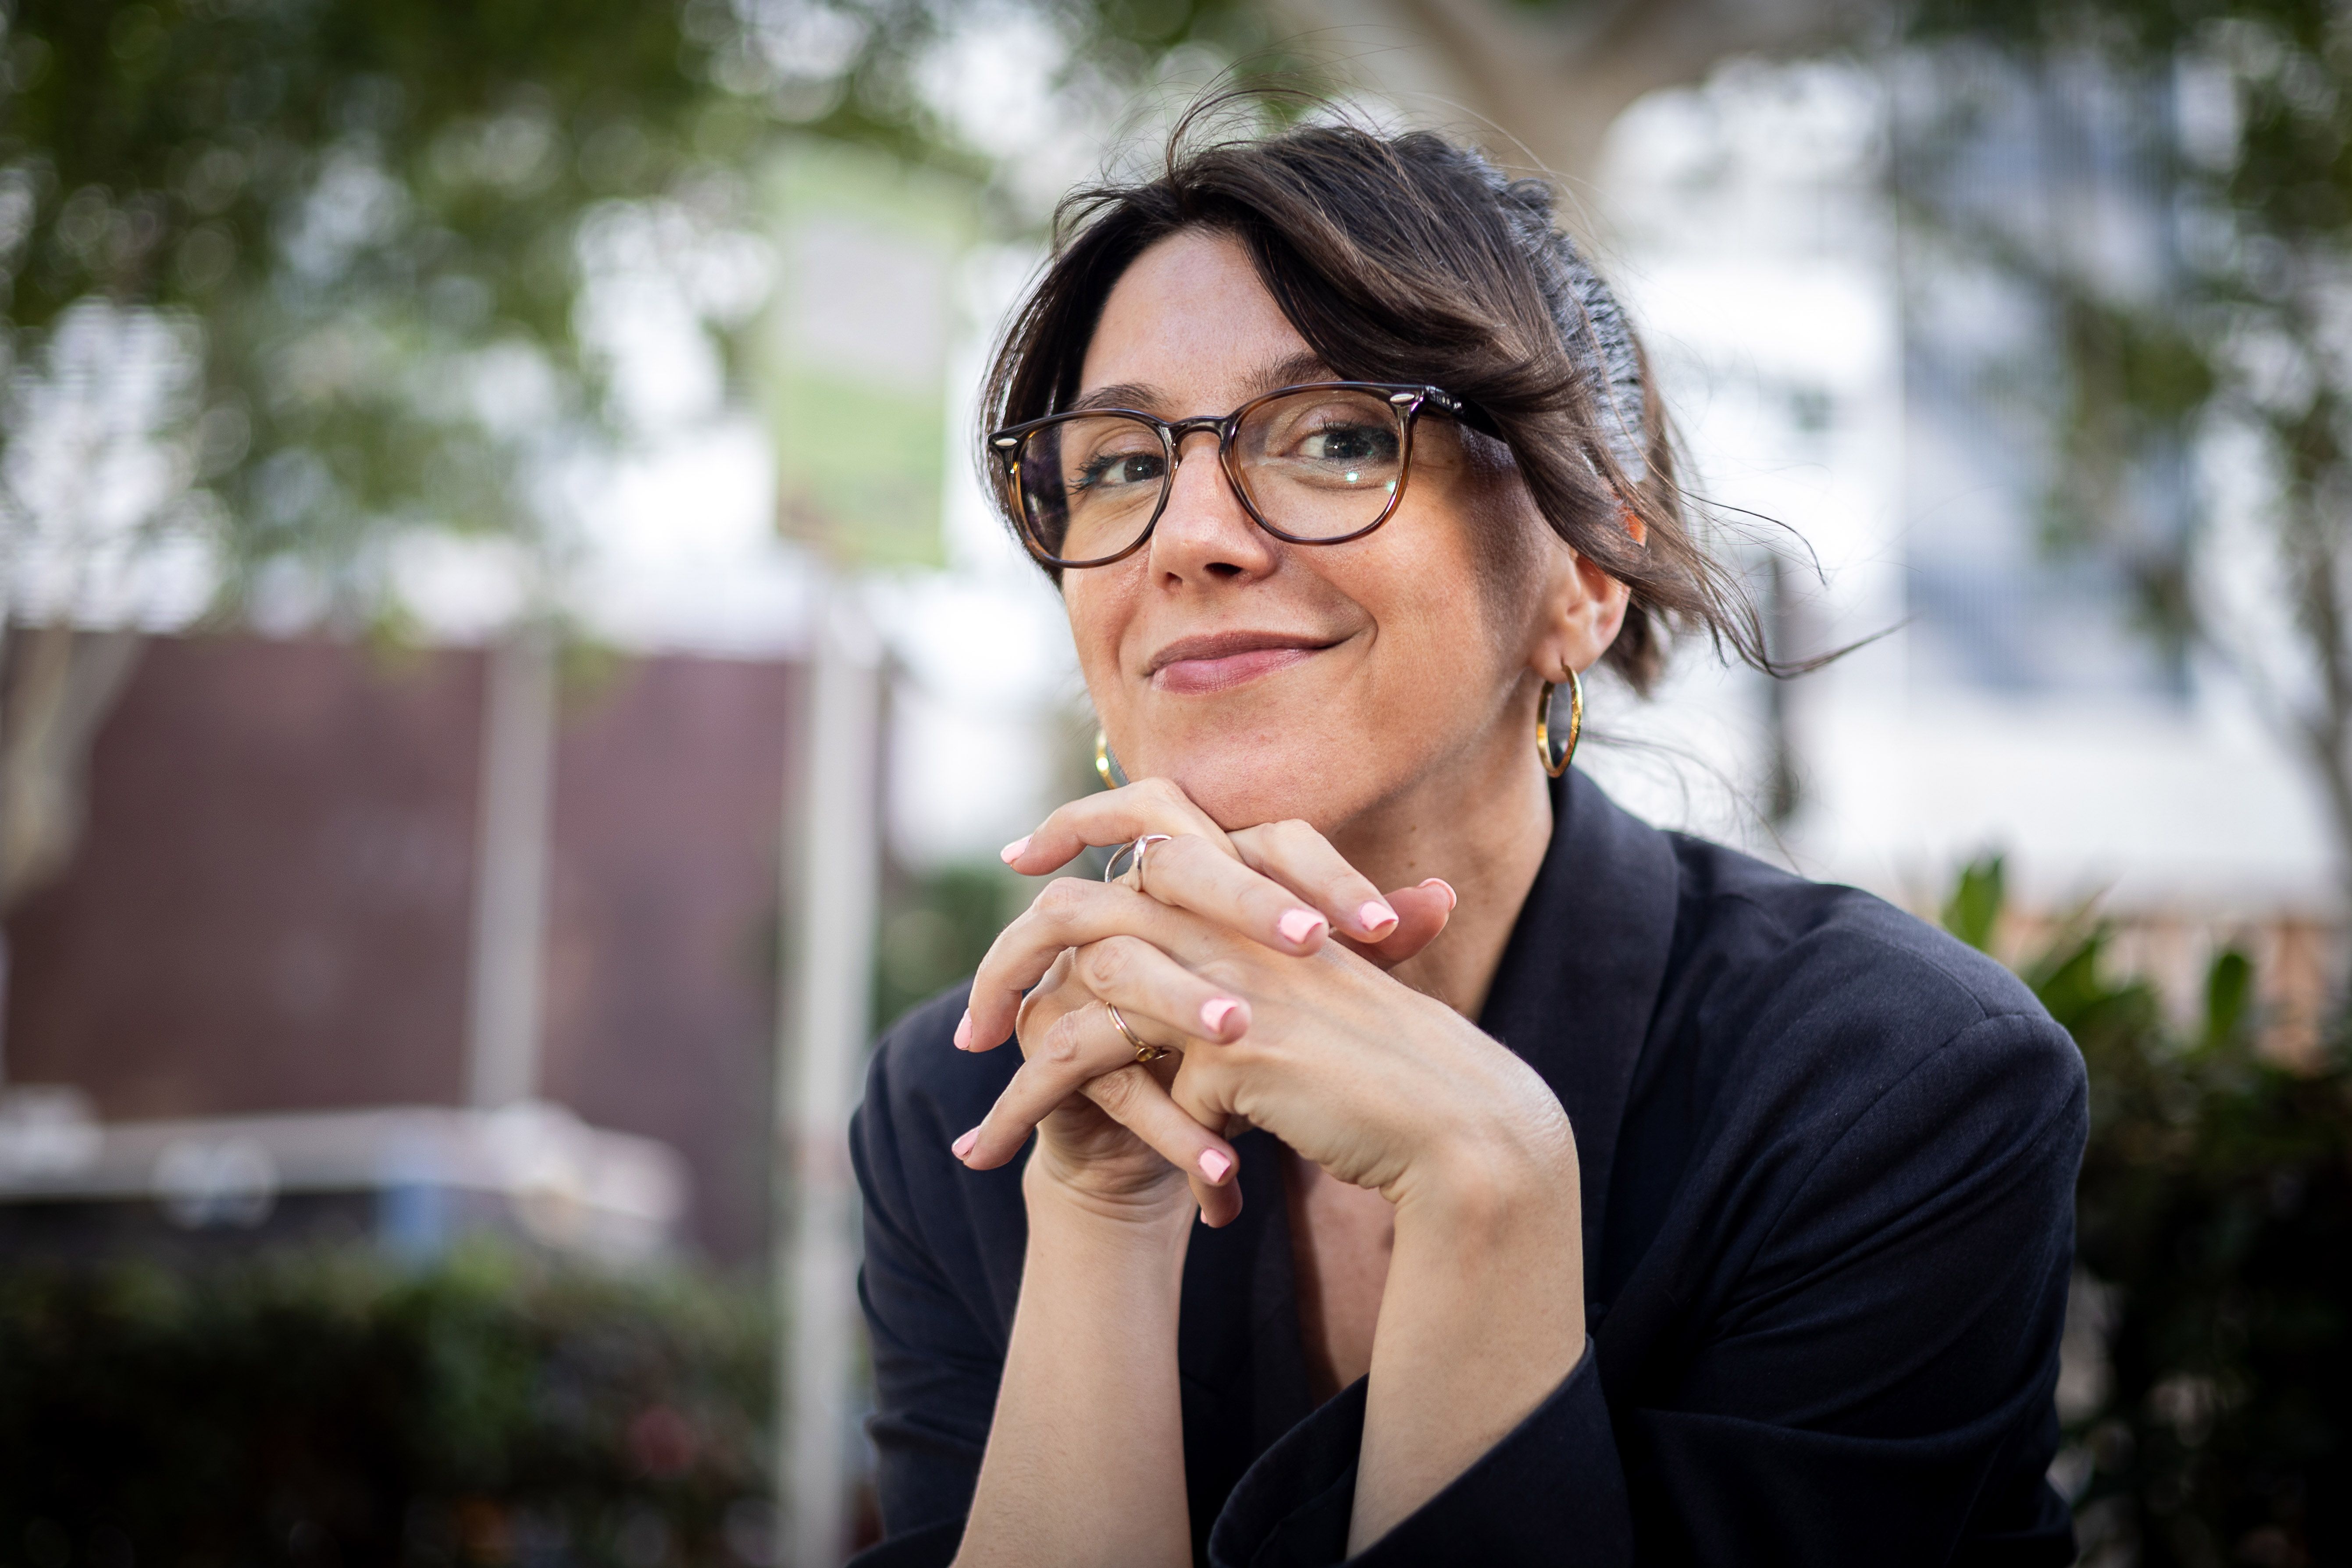 Elisenda Pineda s’estrena com a escriptora amb ‘La catalana llengua’